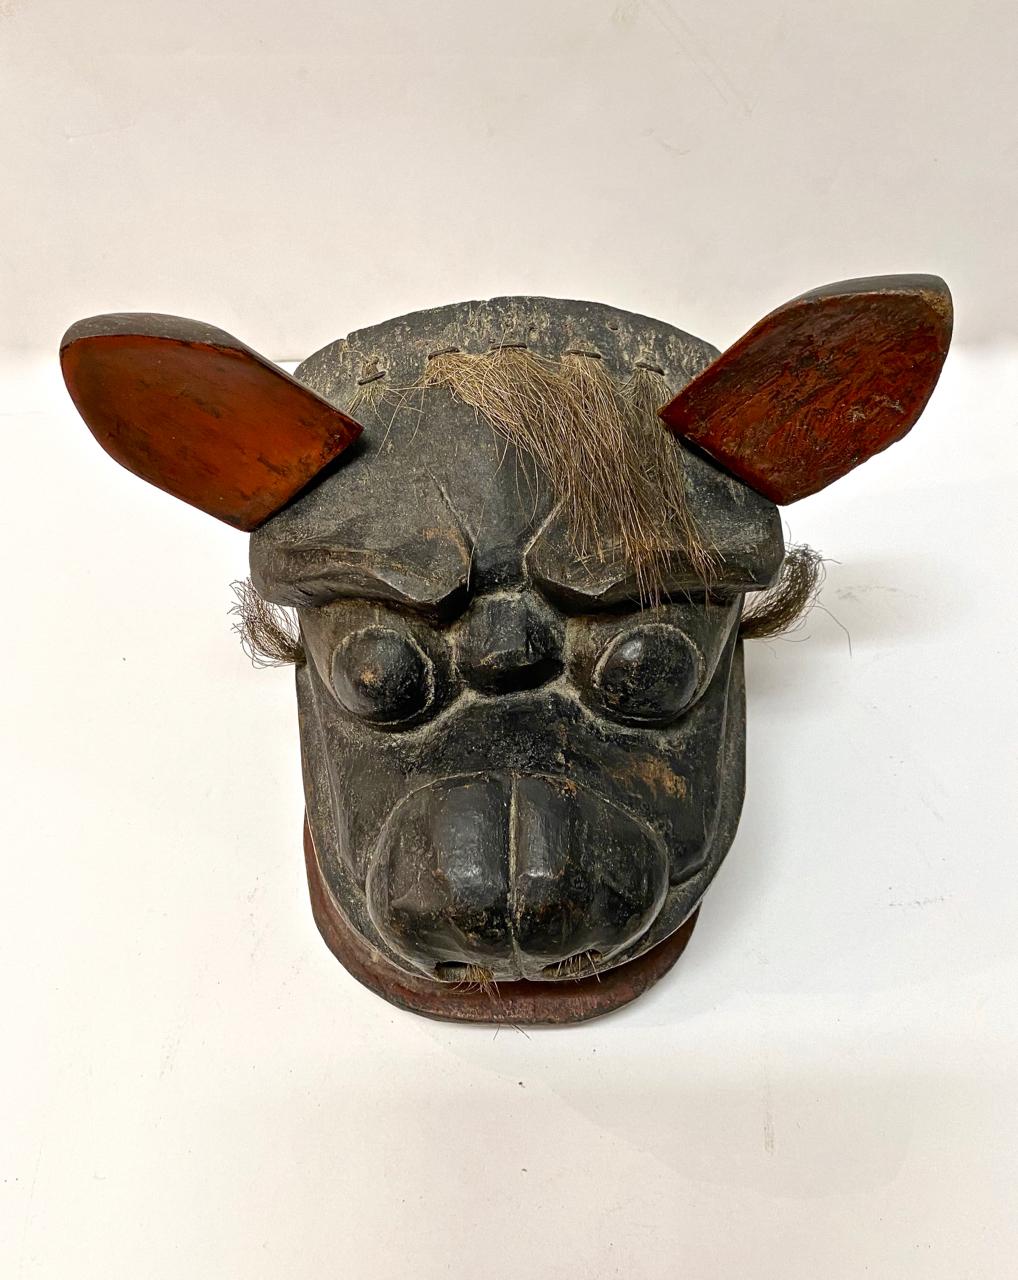 Dies ist ein weiteres hervorragendes Beispiel für eine Löwenmaske aus der Edo-Periode (frühes 18. Jahrhundert oder früher), die für die Löwentänze des Gion-Matsuri-Festivals geschaffen wurde. Die Maske ist in einem insgesamt guten Zustand für ihr